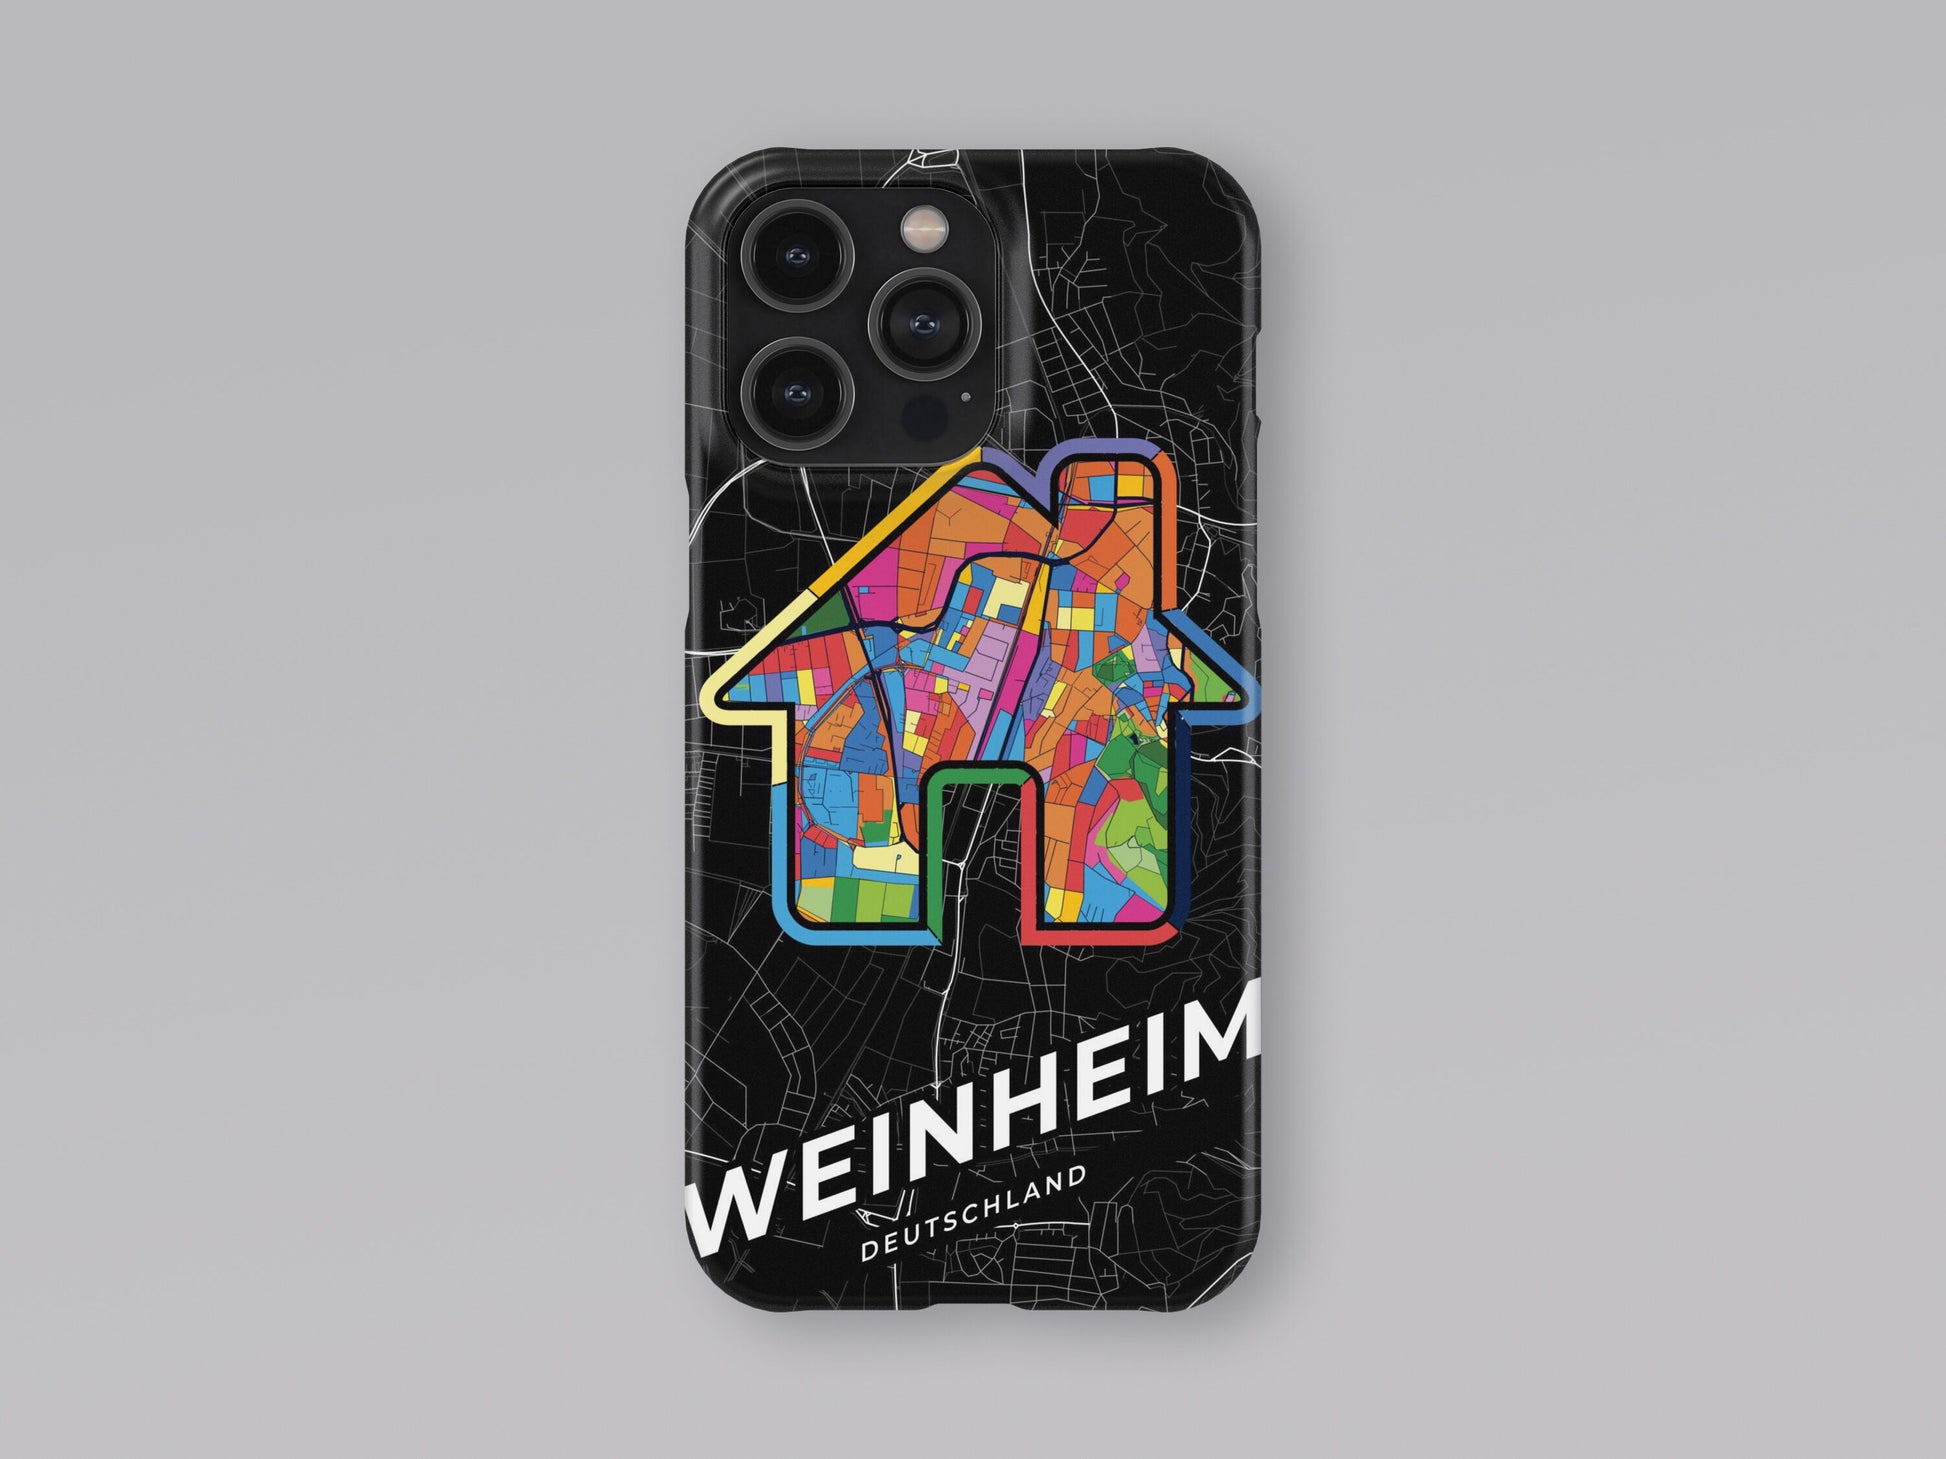 Weinheim Deutschland slim phone case with colorful icon 3